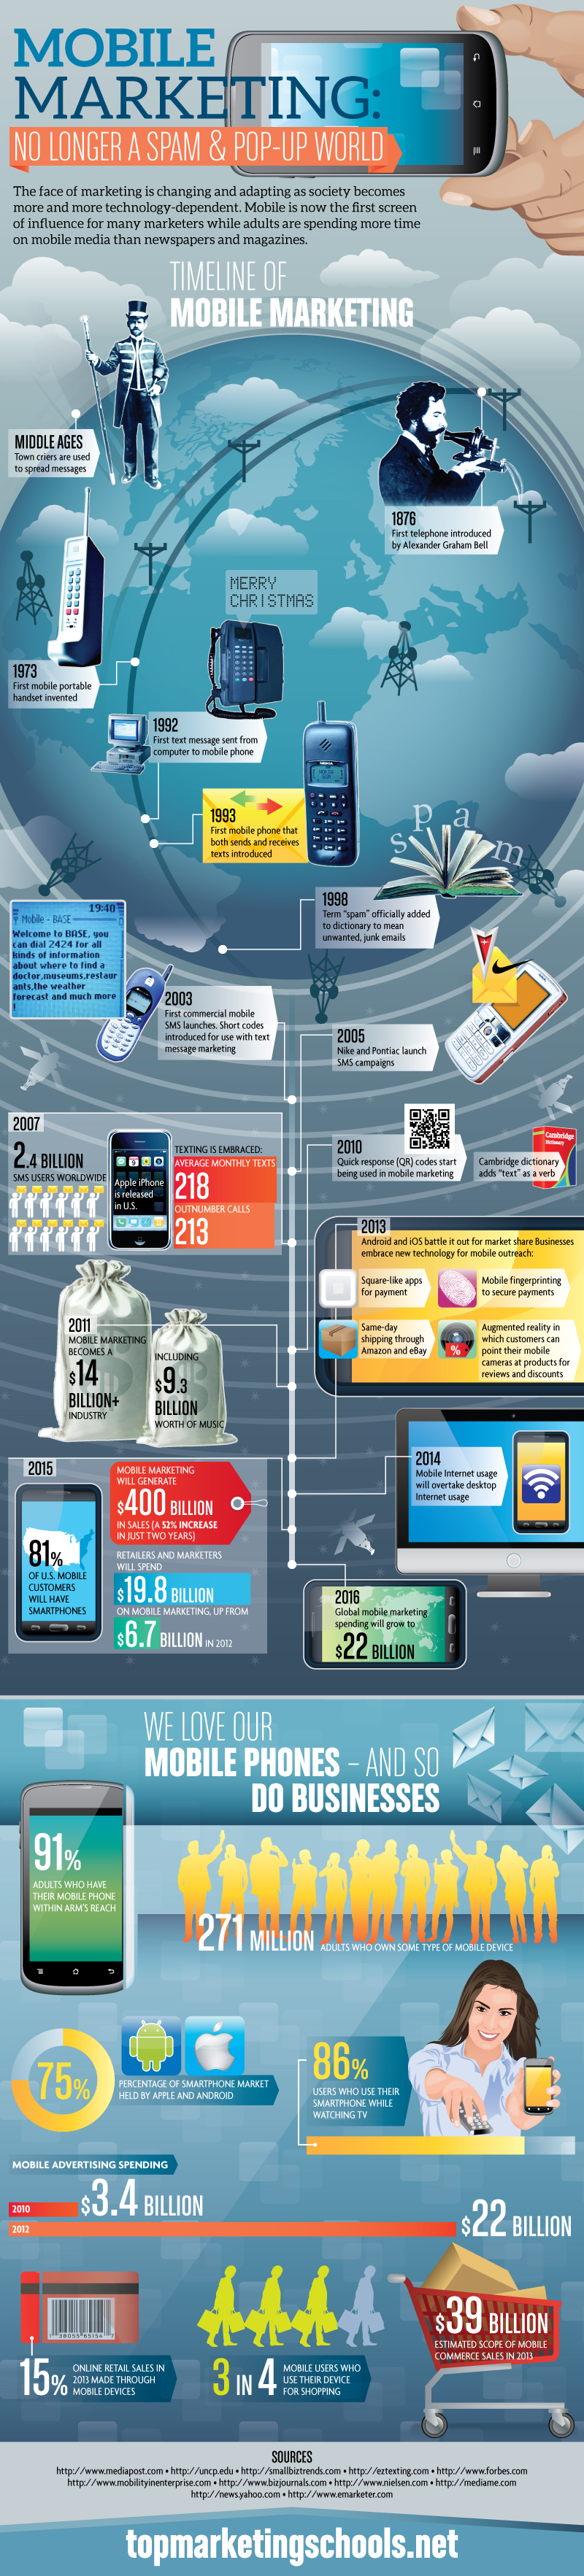 Timeline of Mobile Marketing